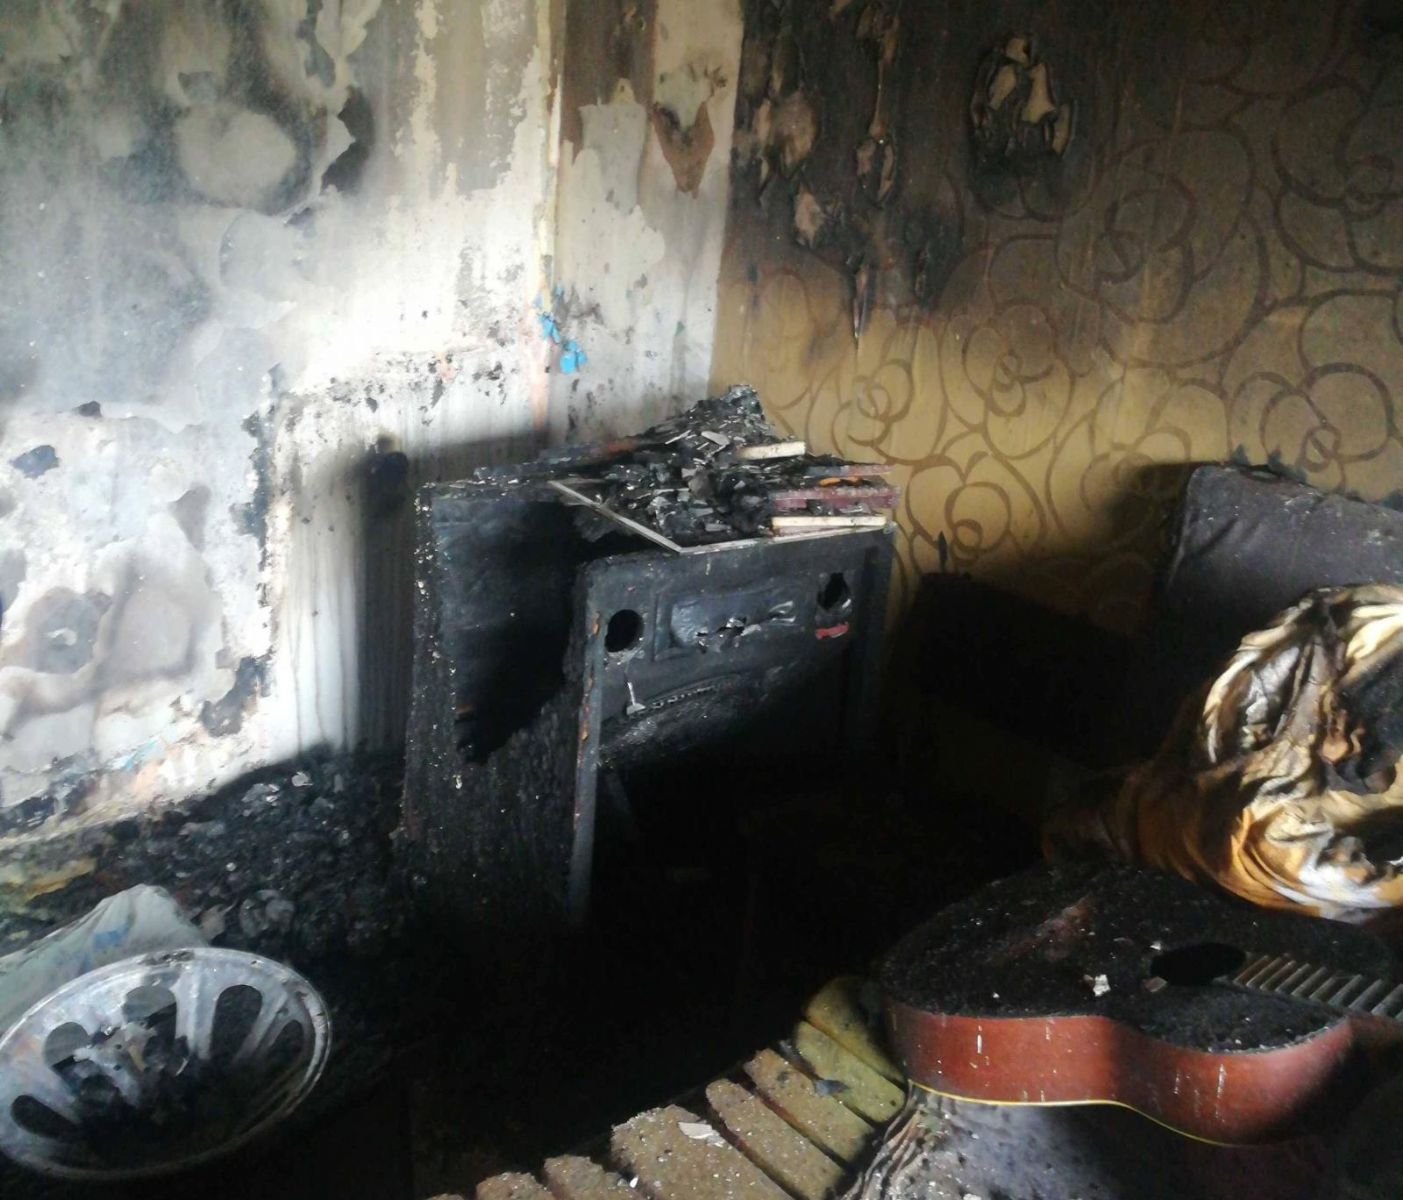 Oloví: Požár v bytovém domě